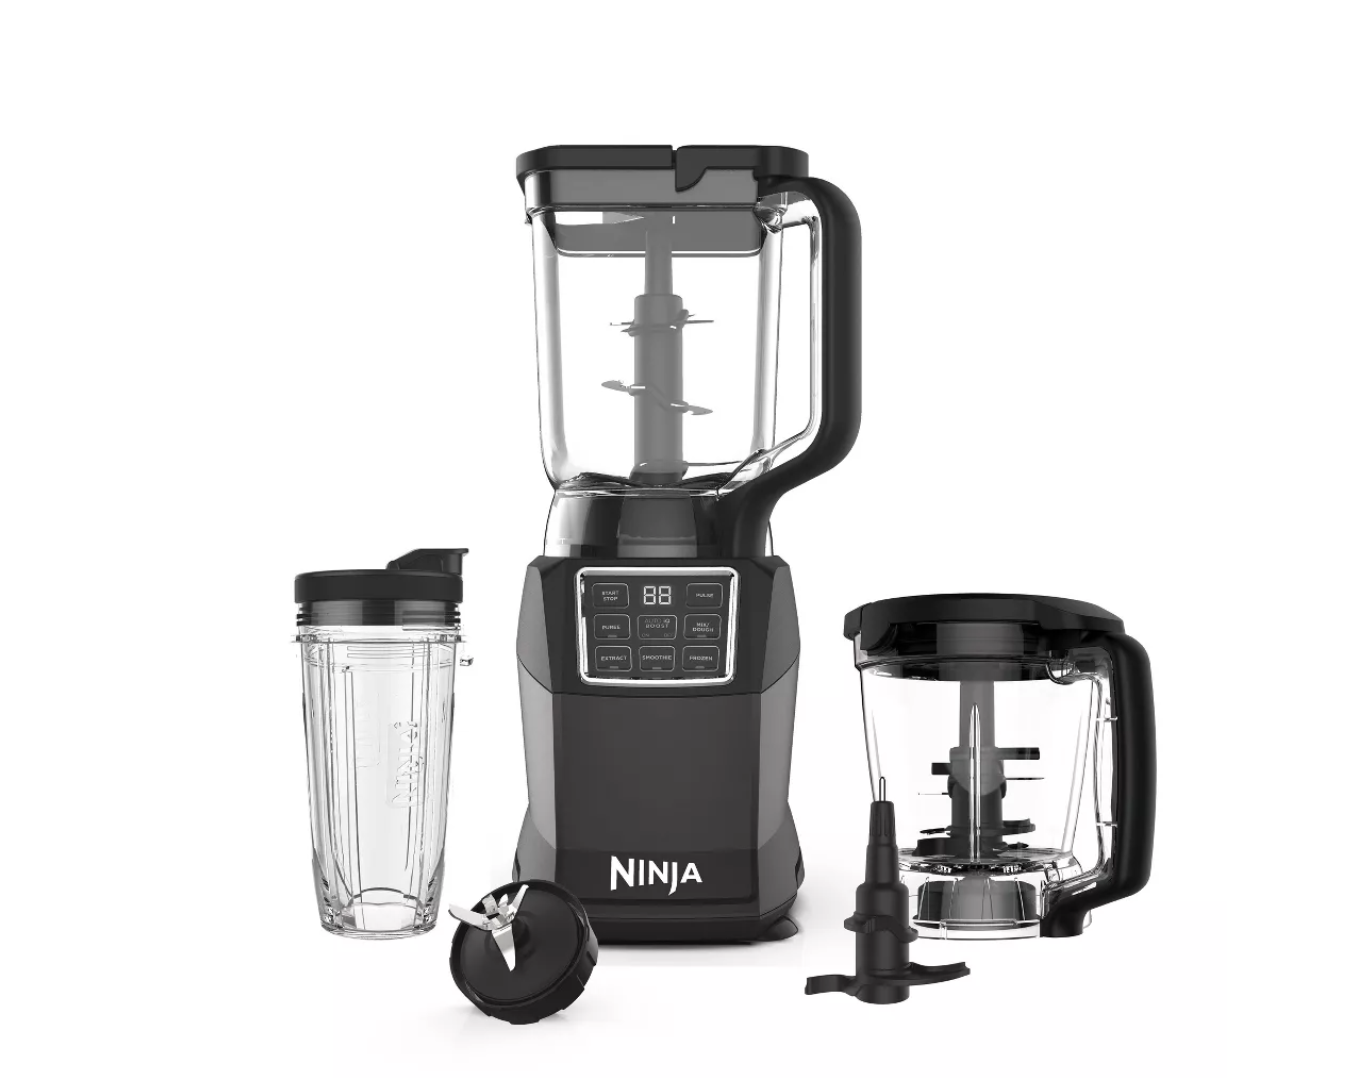 ninja kitchen system blender food processor meal prep tool